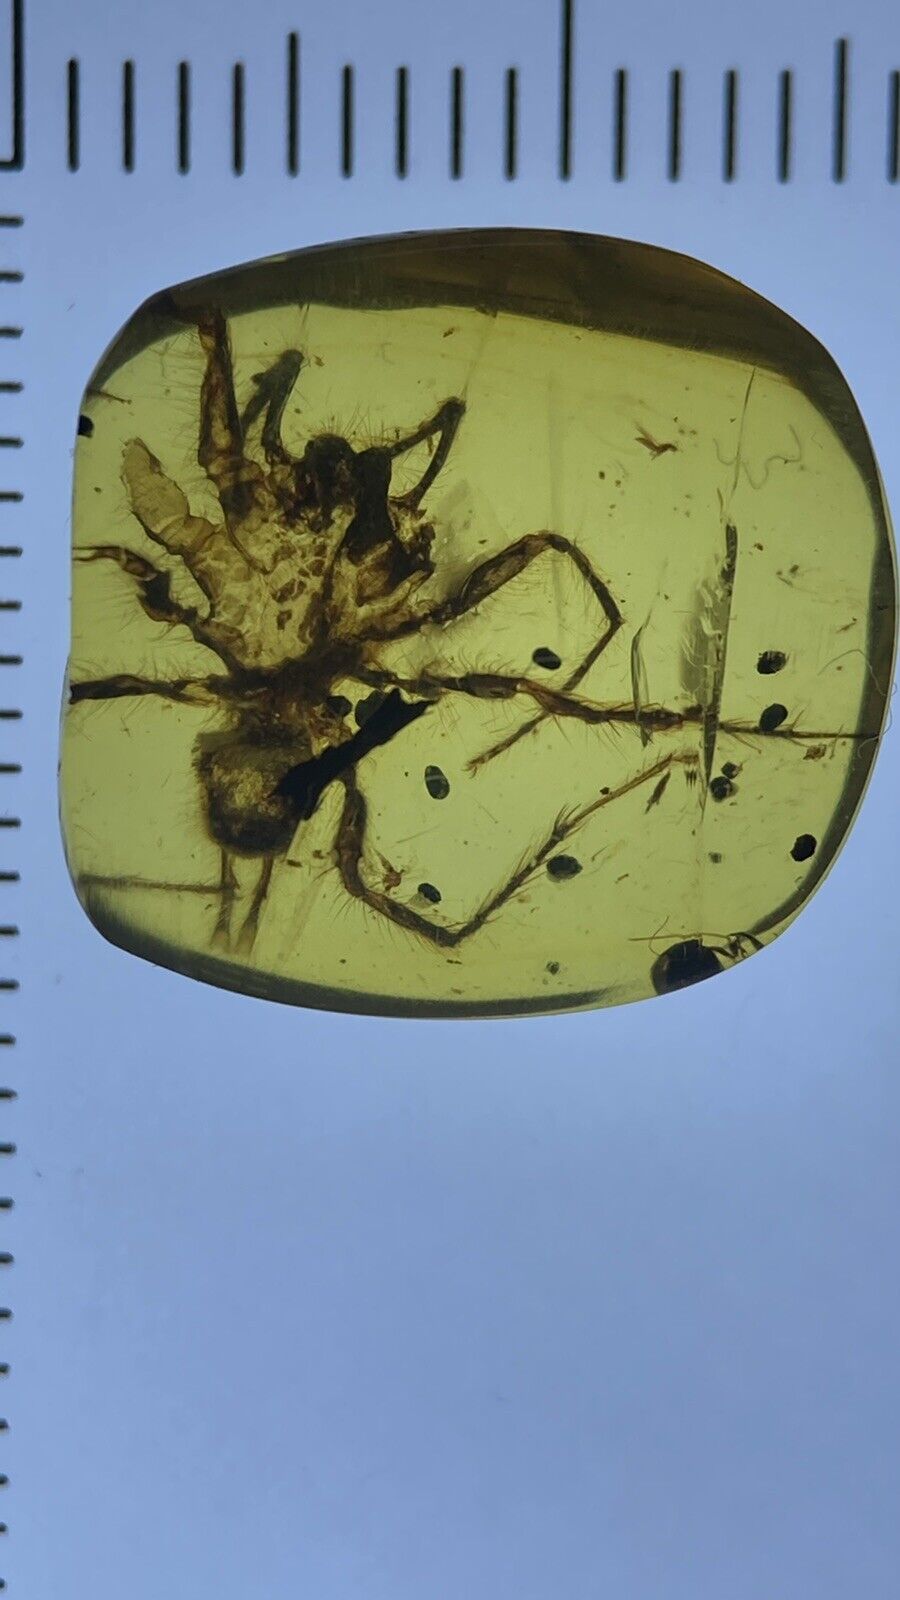 Huge Perfect Spider, Pristine Fossil In Genuine burmite Amber, 98myo